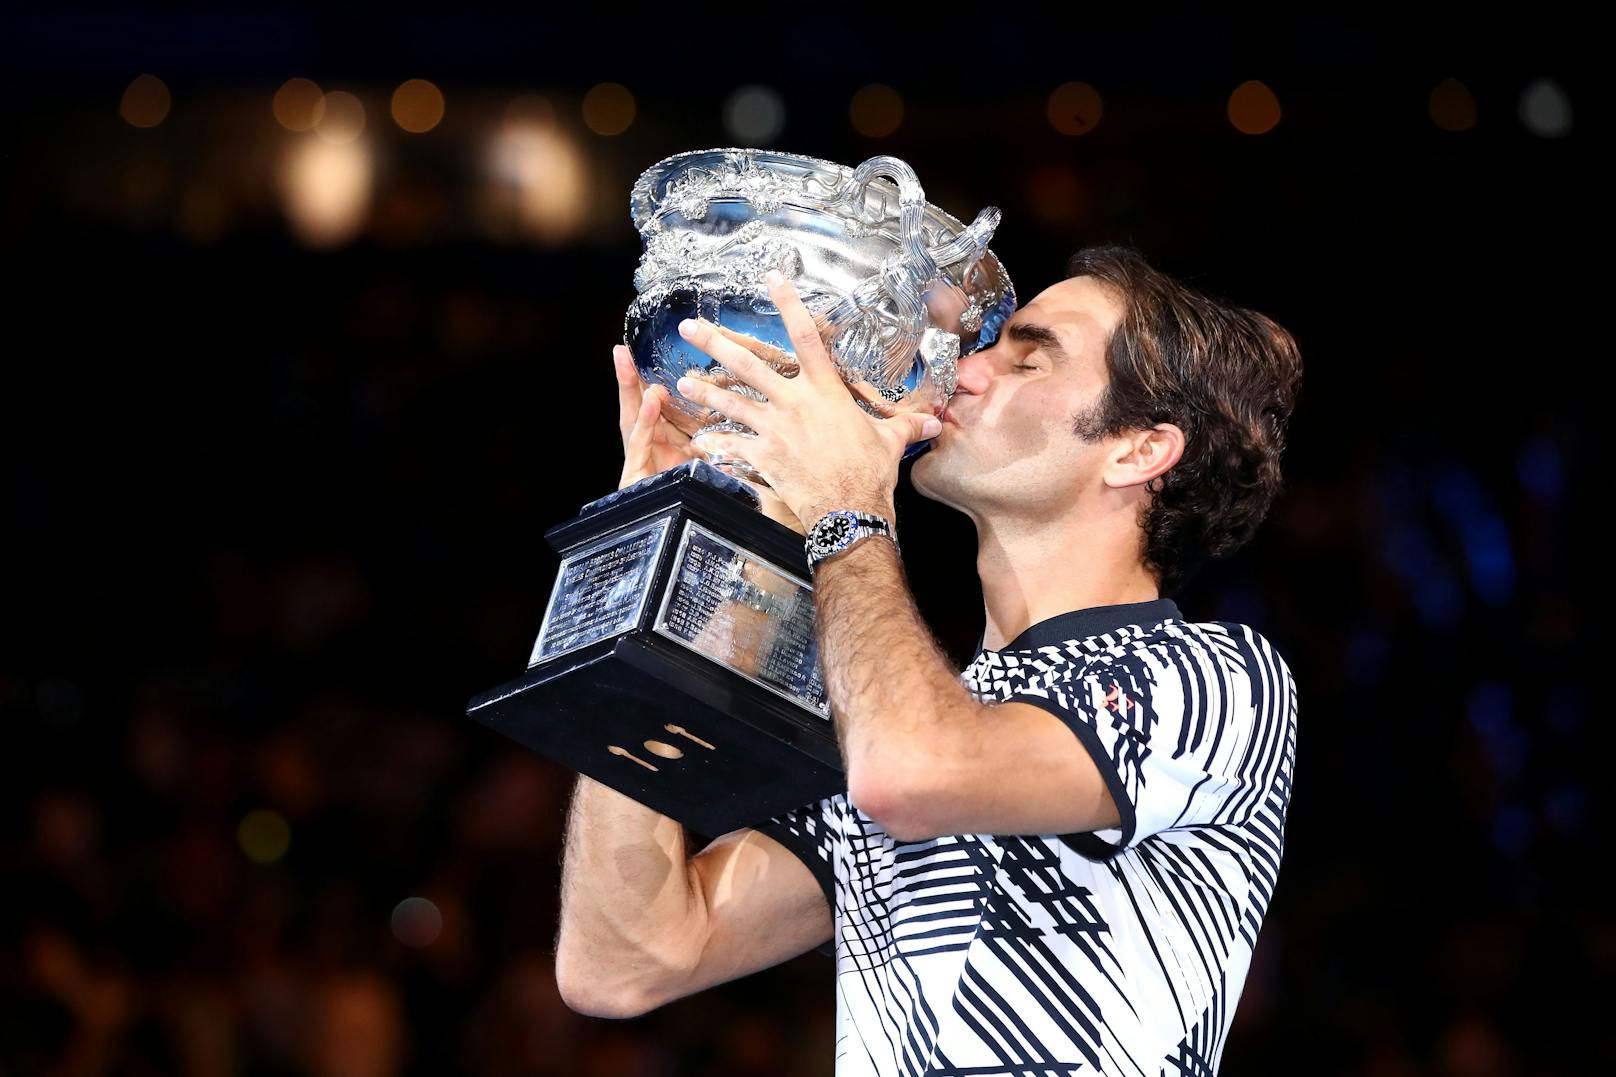 Nach dem Sieg des Norman Brookes Challenge Cup am 29. Januar 2017 in Melbourne, Australien, küsst Federer den Pokal.